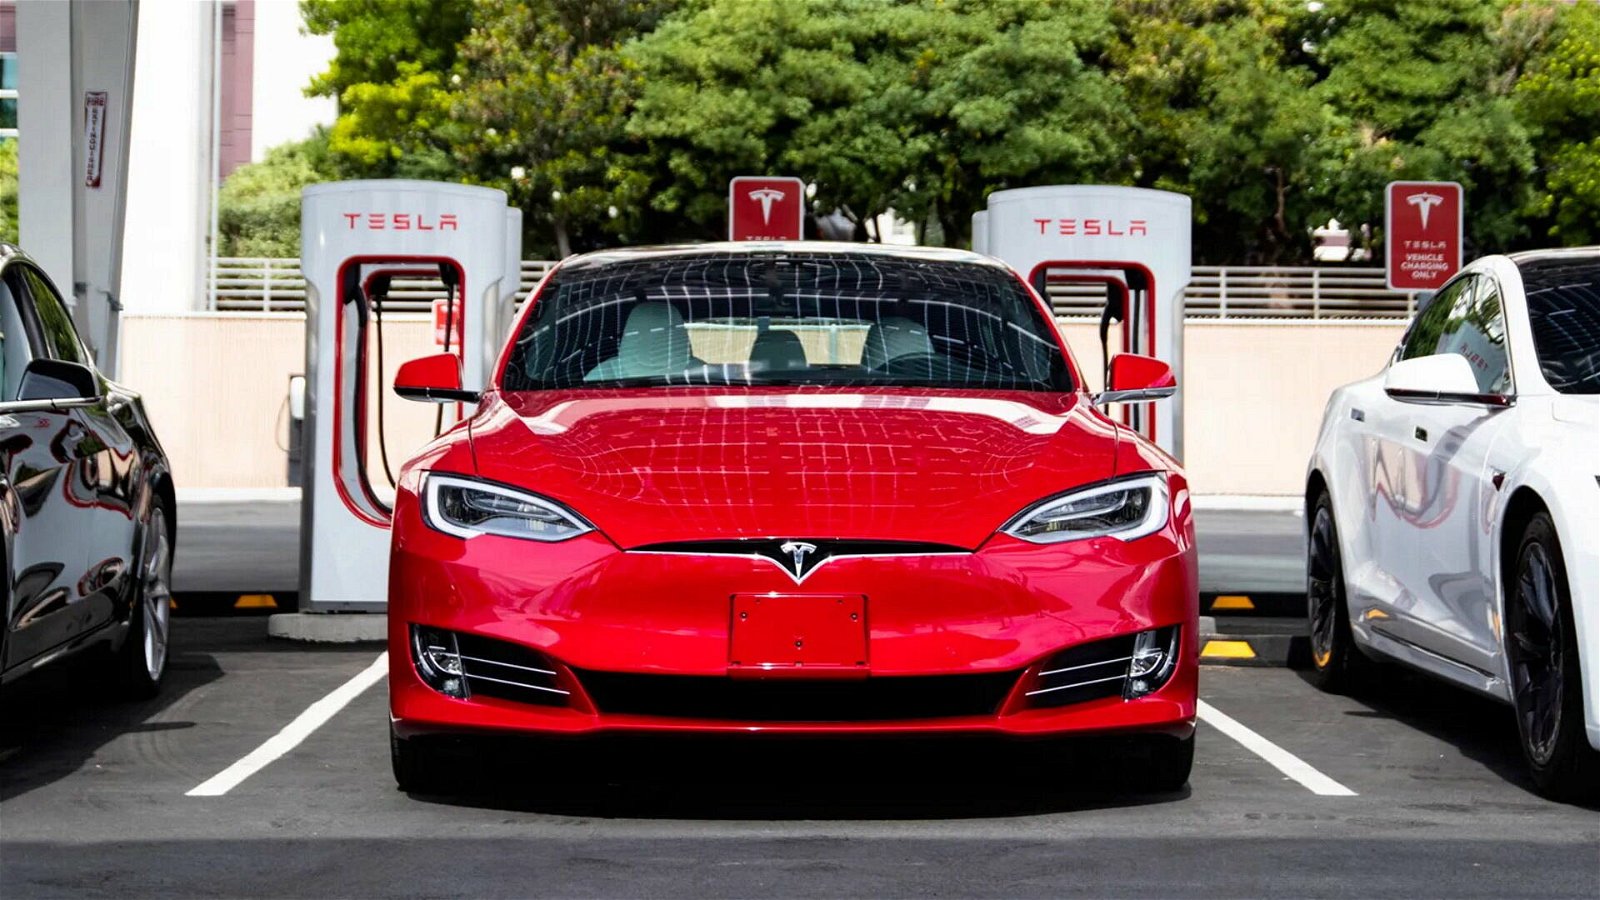 Immagine di Tesla Model S usata venduta a più di 50,000$